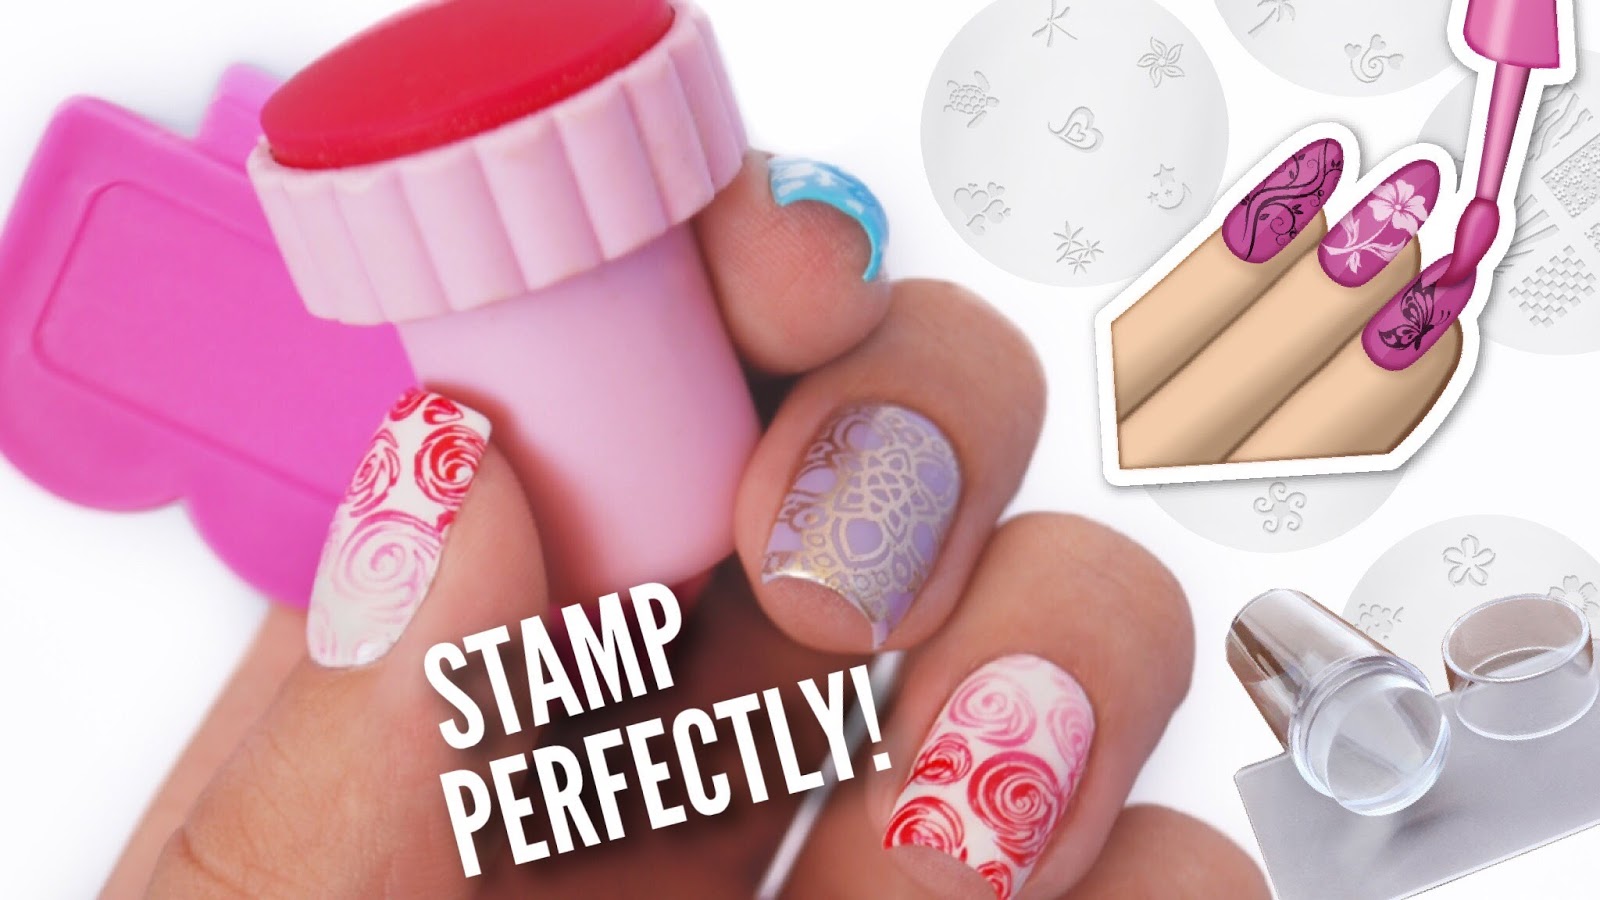 Stamping Nail Art Kit - wide 5